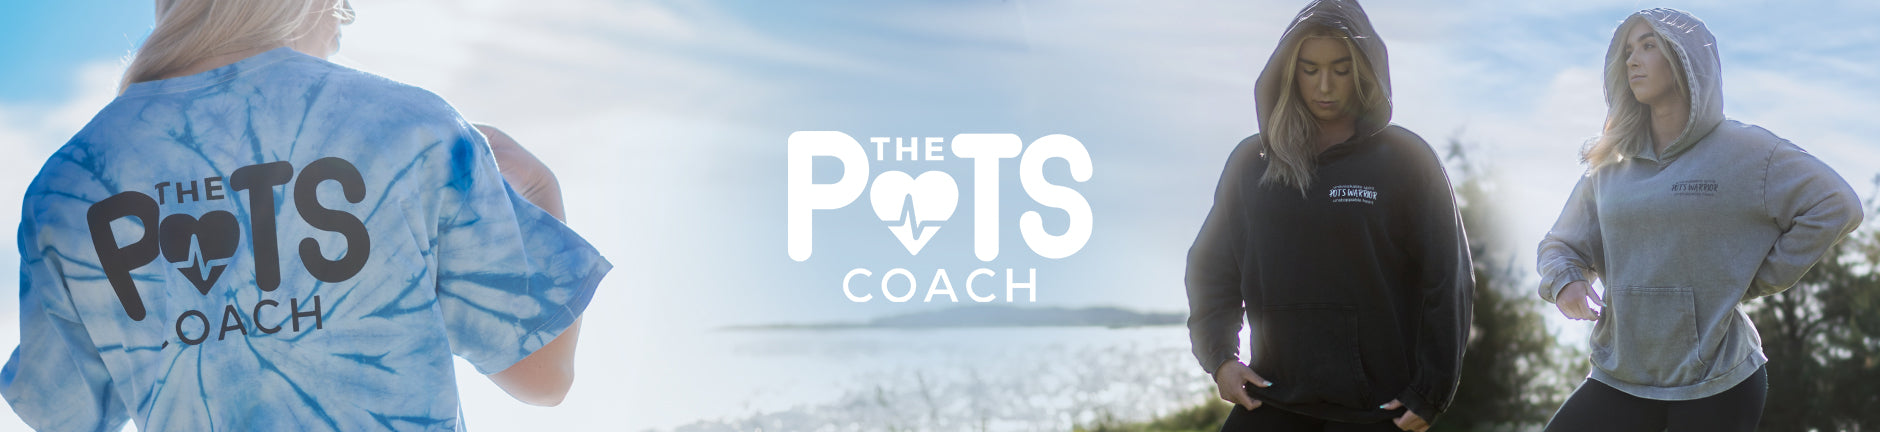 The Pots Coach